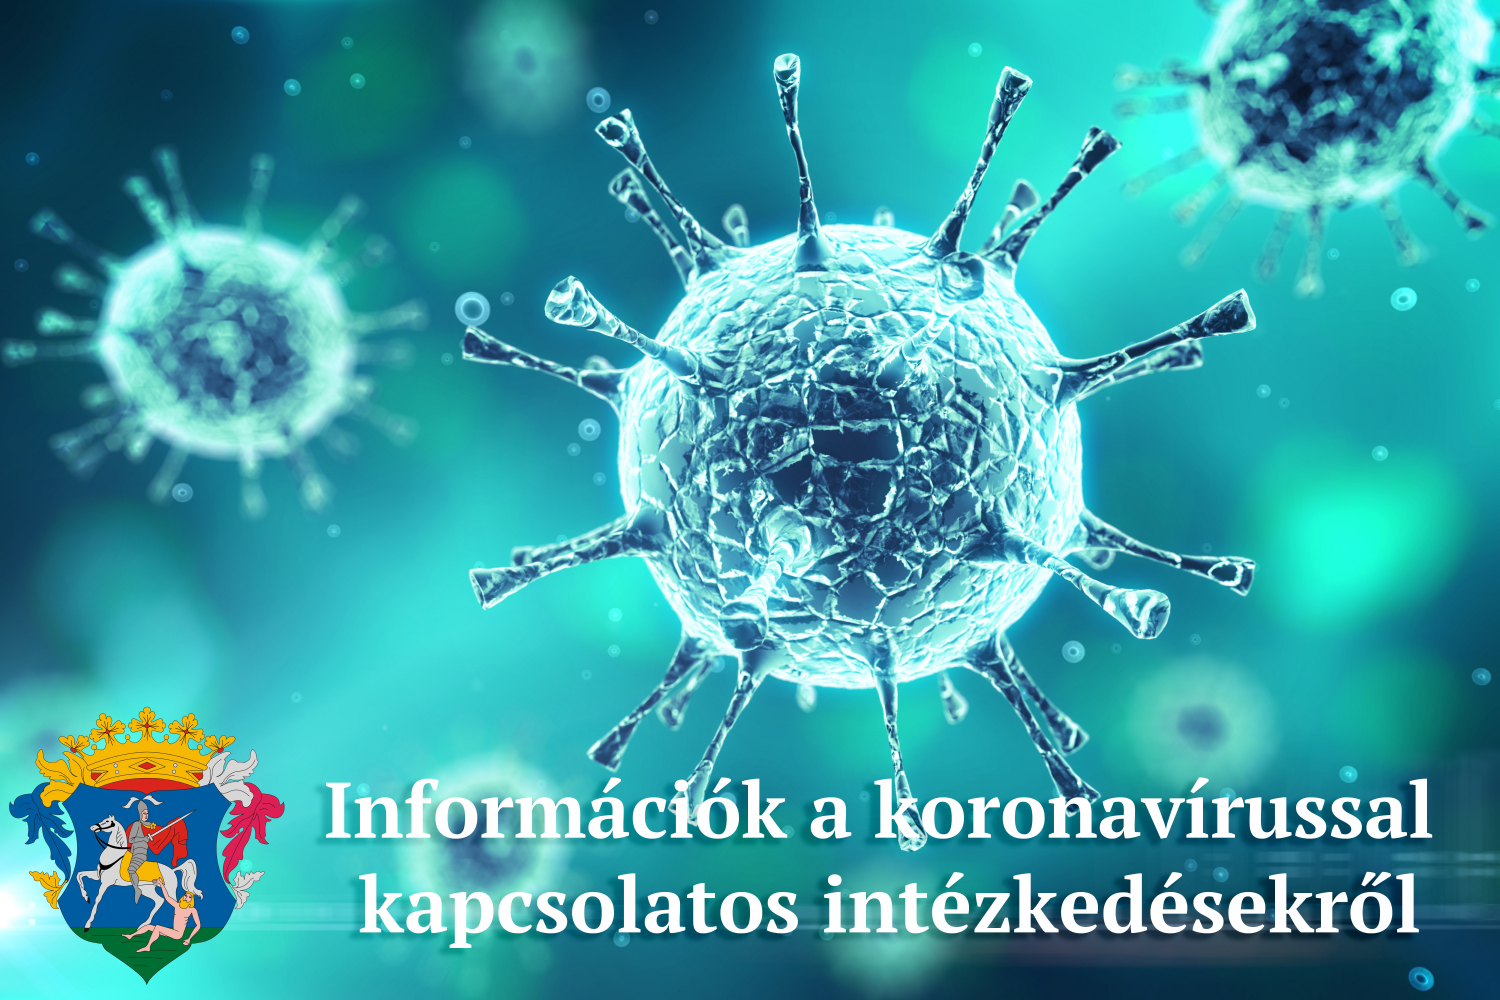 Koronavírussal kapcsolatos intézkedések, döntések 2021. június 10 - 14 között